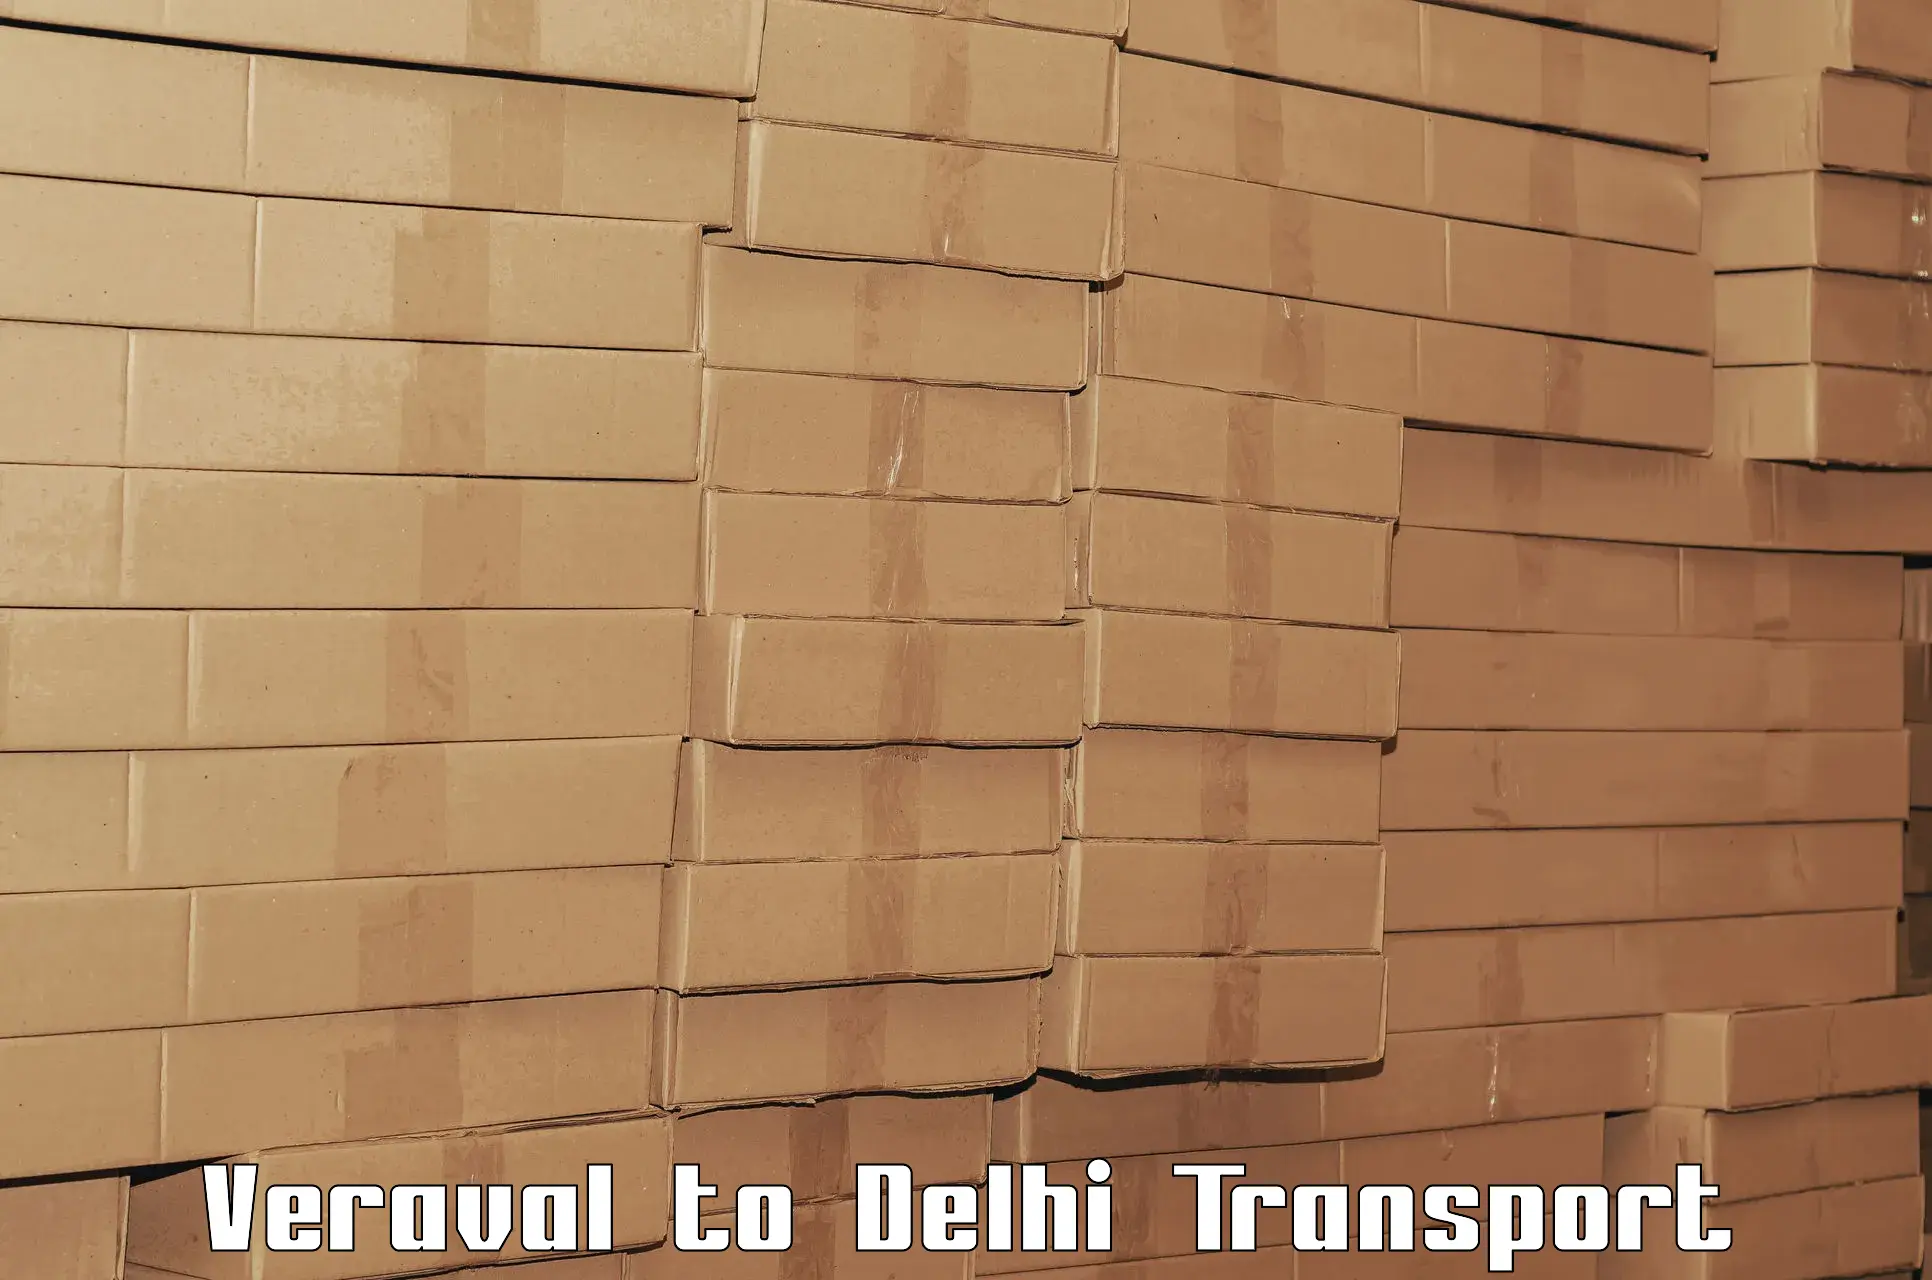 All India transport service Veraval to Delhi